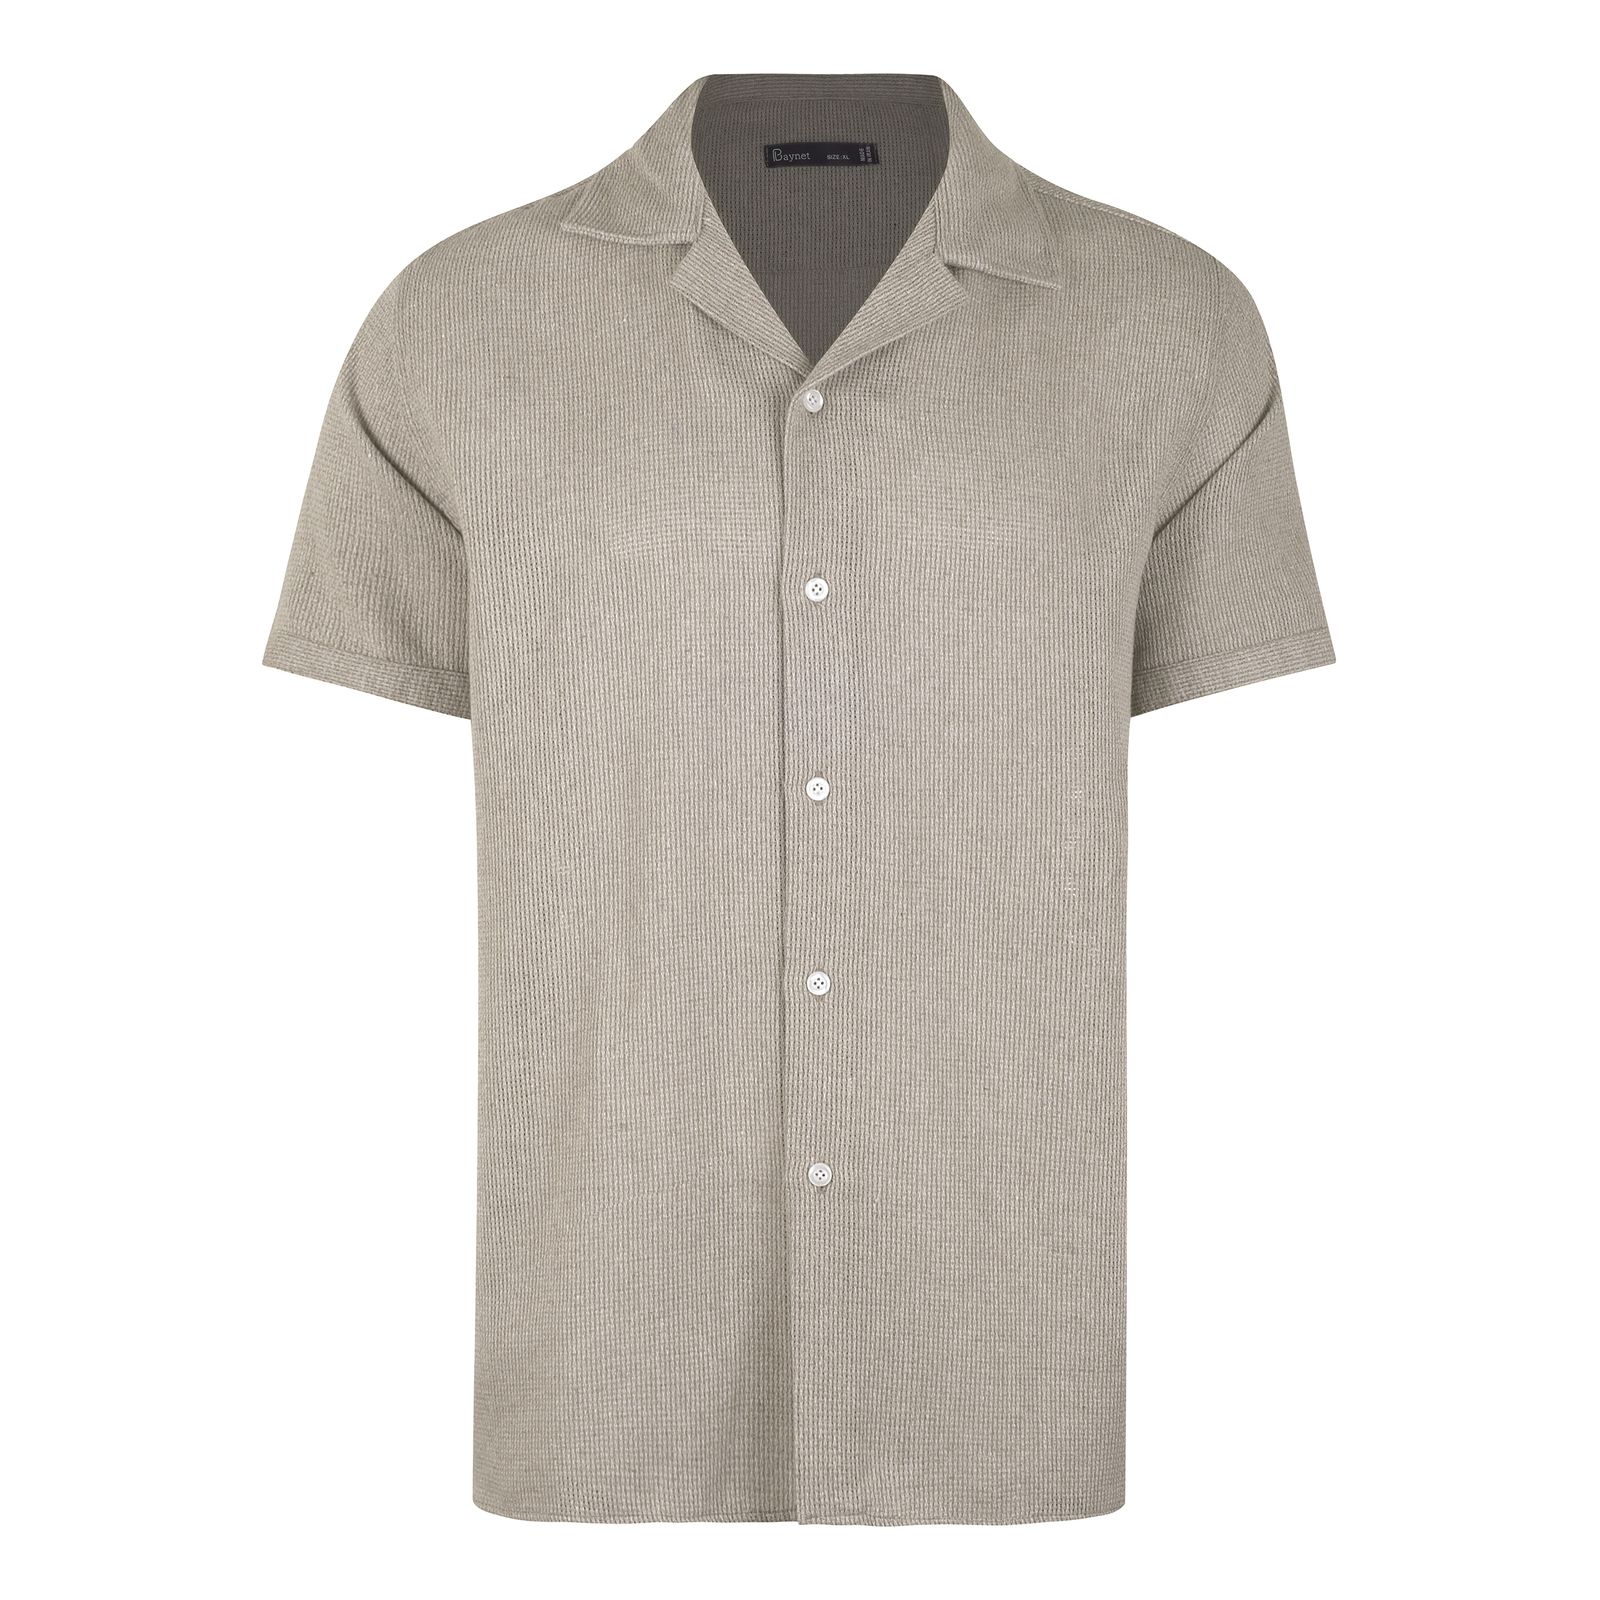 پیراهن آستین کوتاه مردانه باینت مدل 772-4 رنگ کرم -  - 2